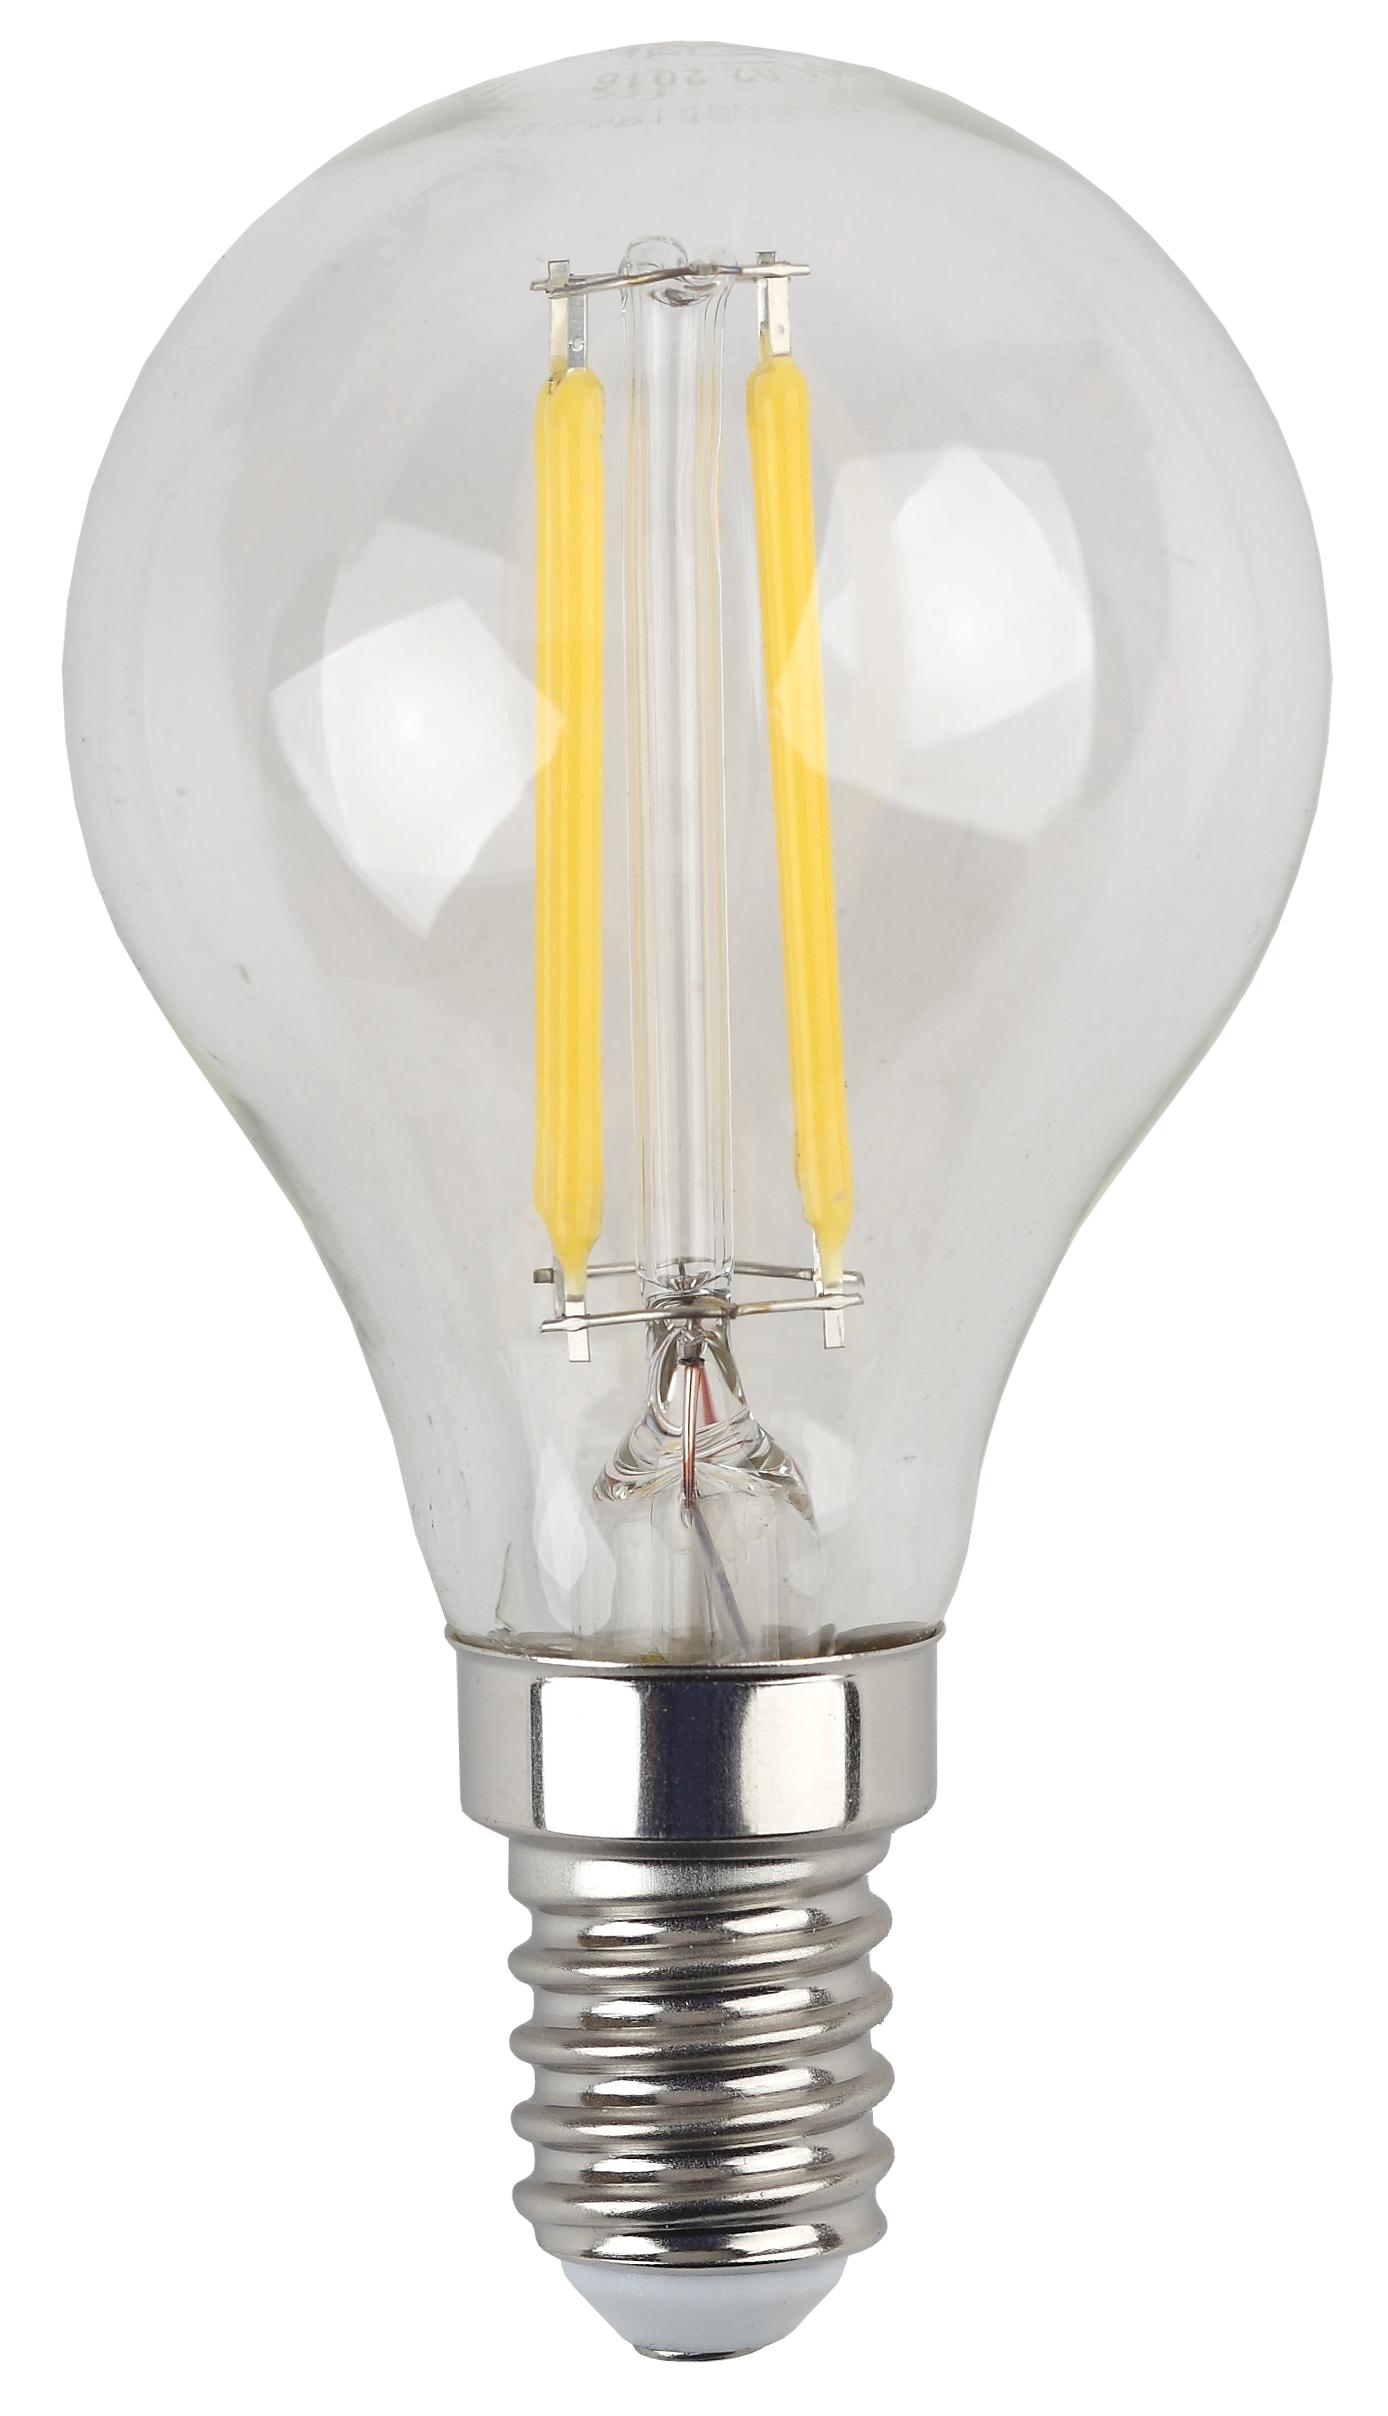 Купить Лампа светодиодная Эра F-LED P45-5W-827 филамент теплый белый свет